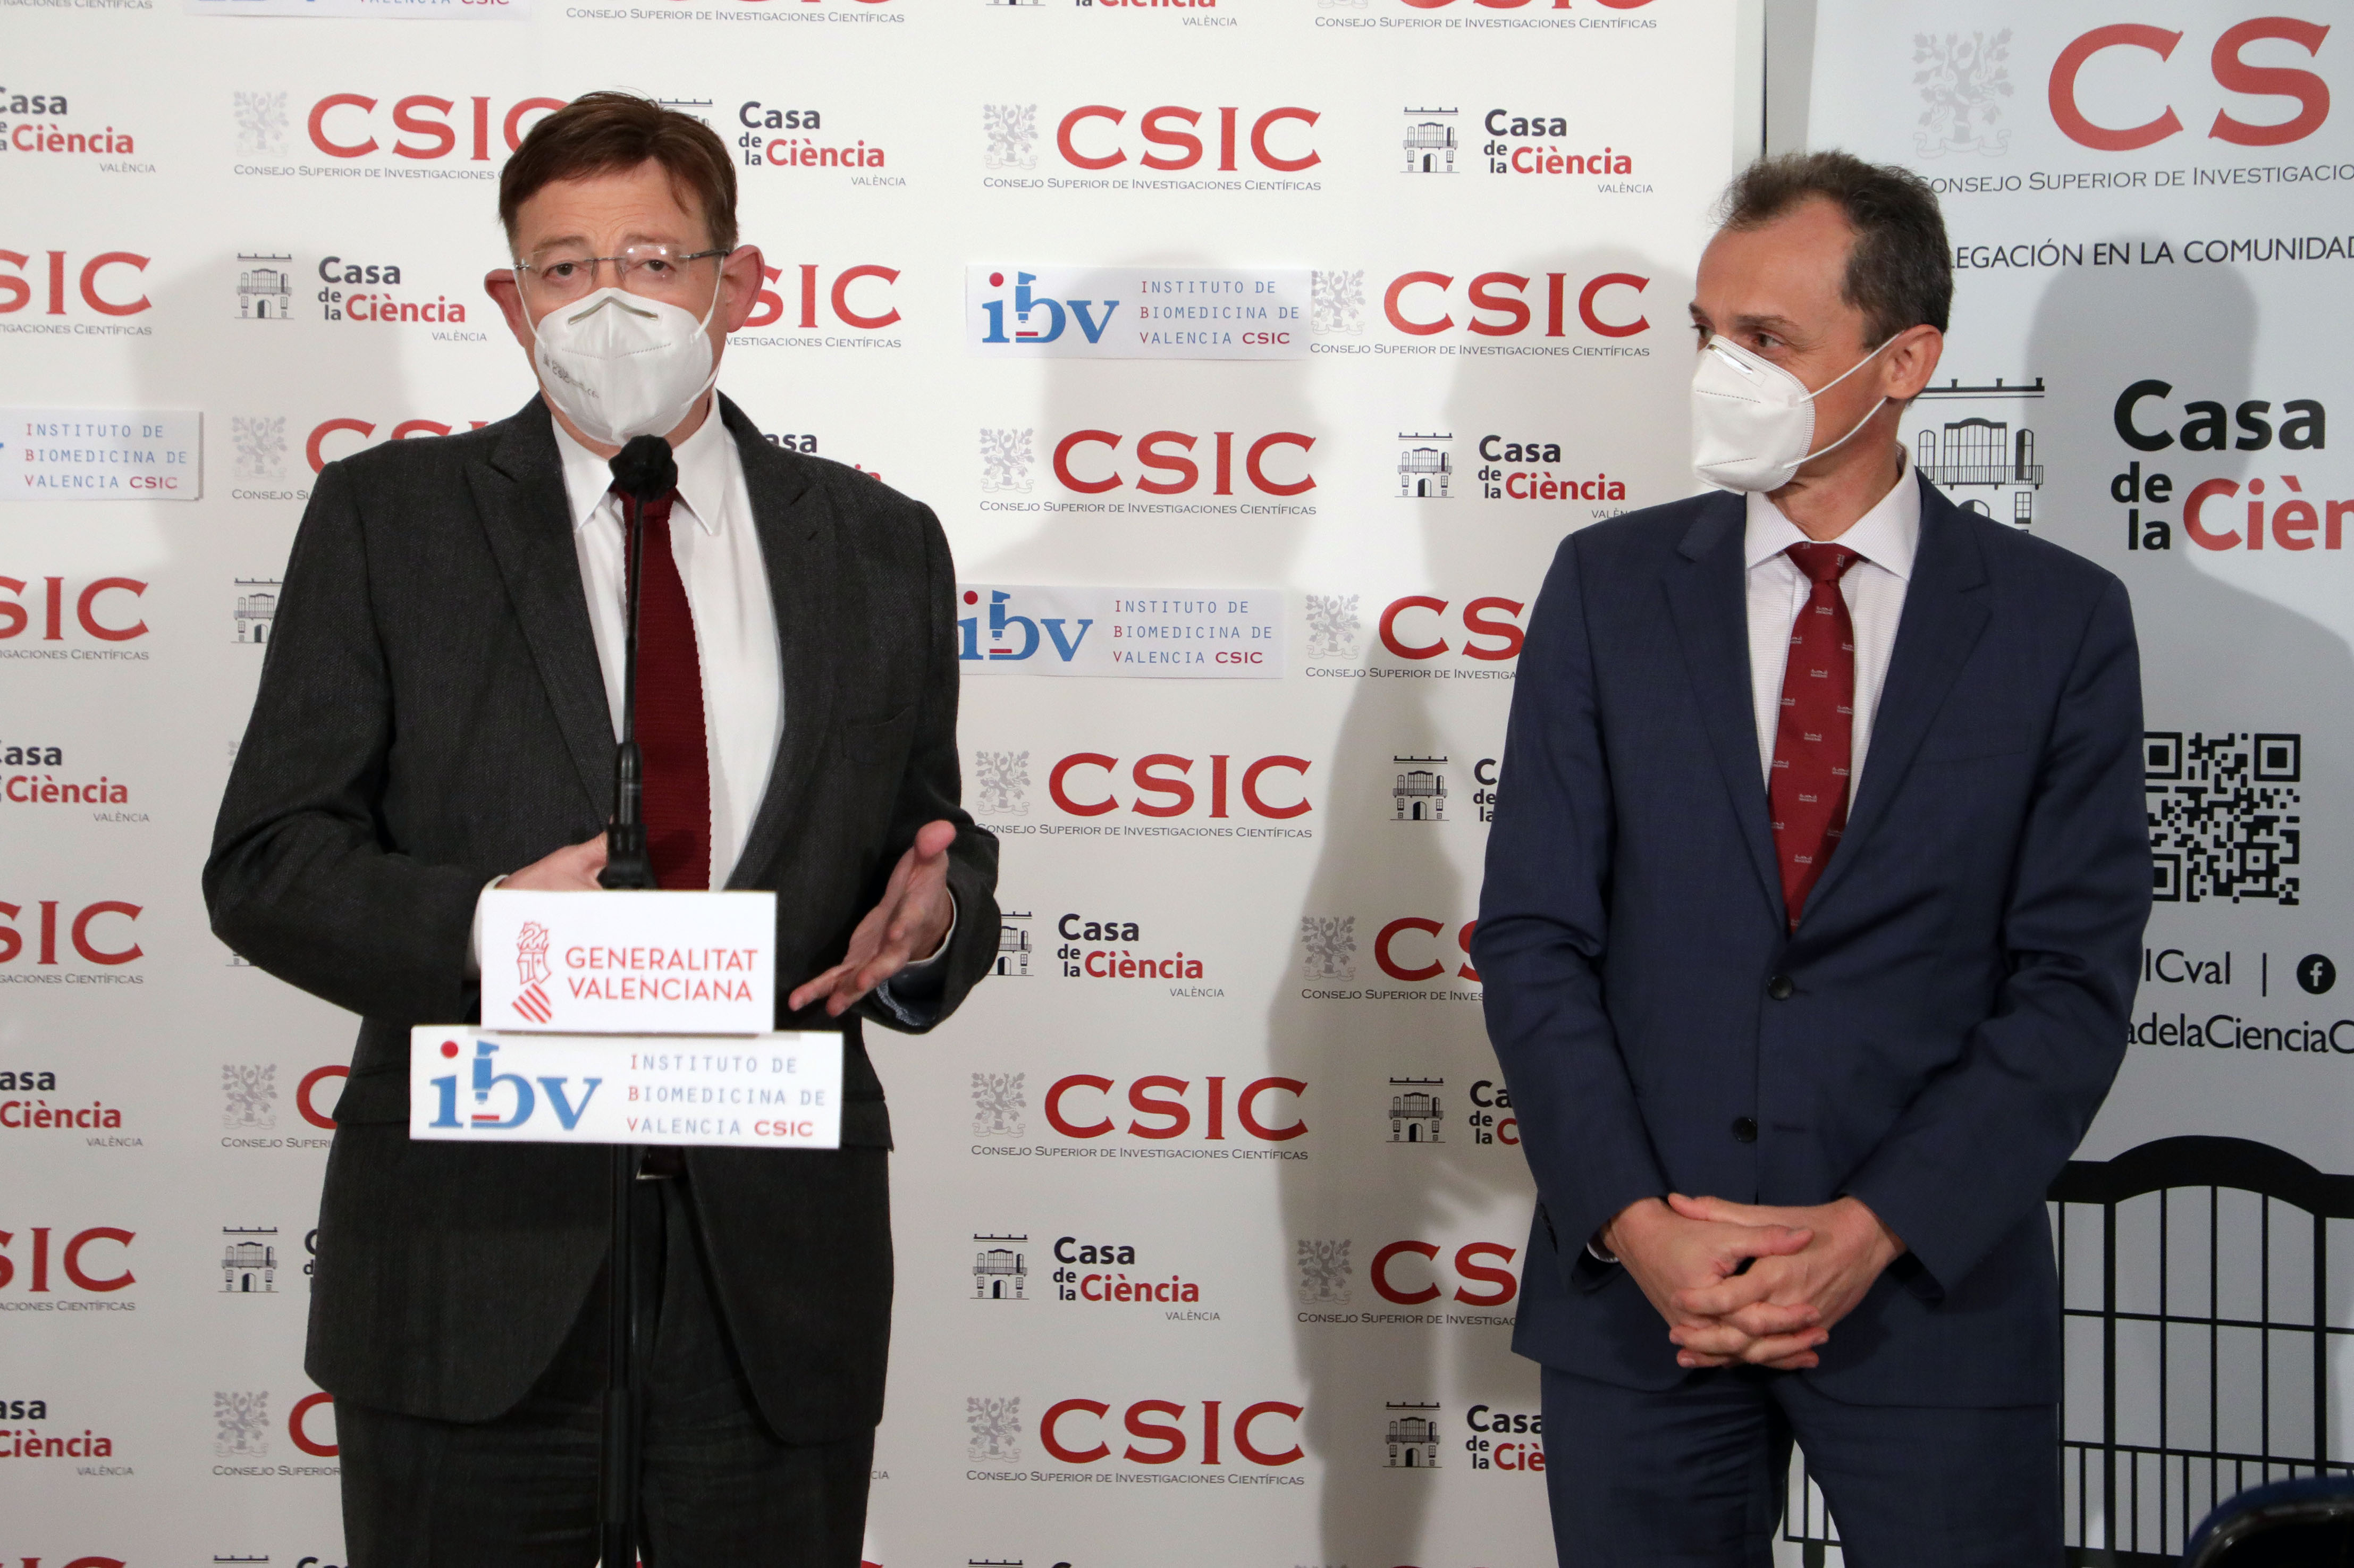 Ximo Puig y Pedro Duque destacan el liderazgo del sistema de innovación valenciano en la lucha contra la pandemia de COVID-19